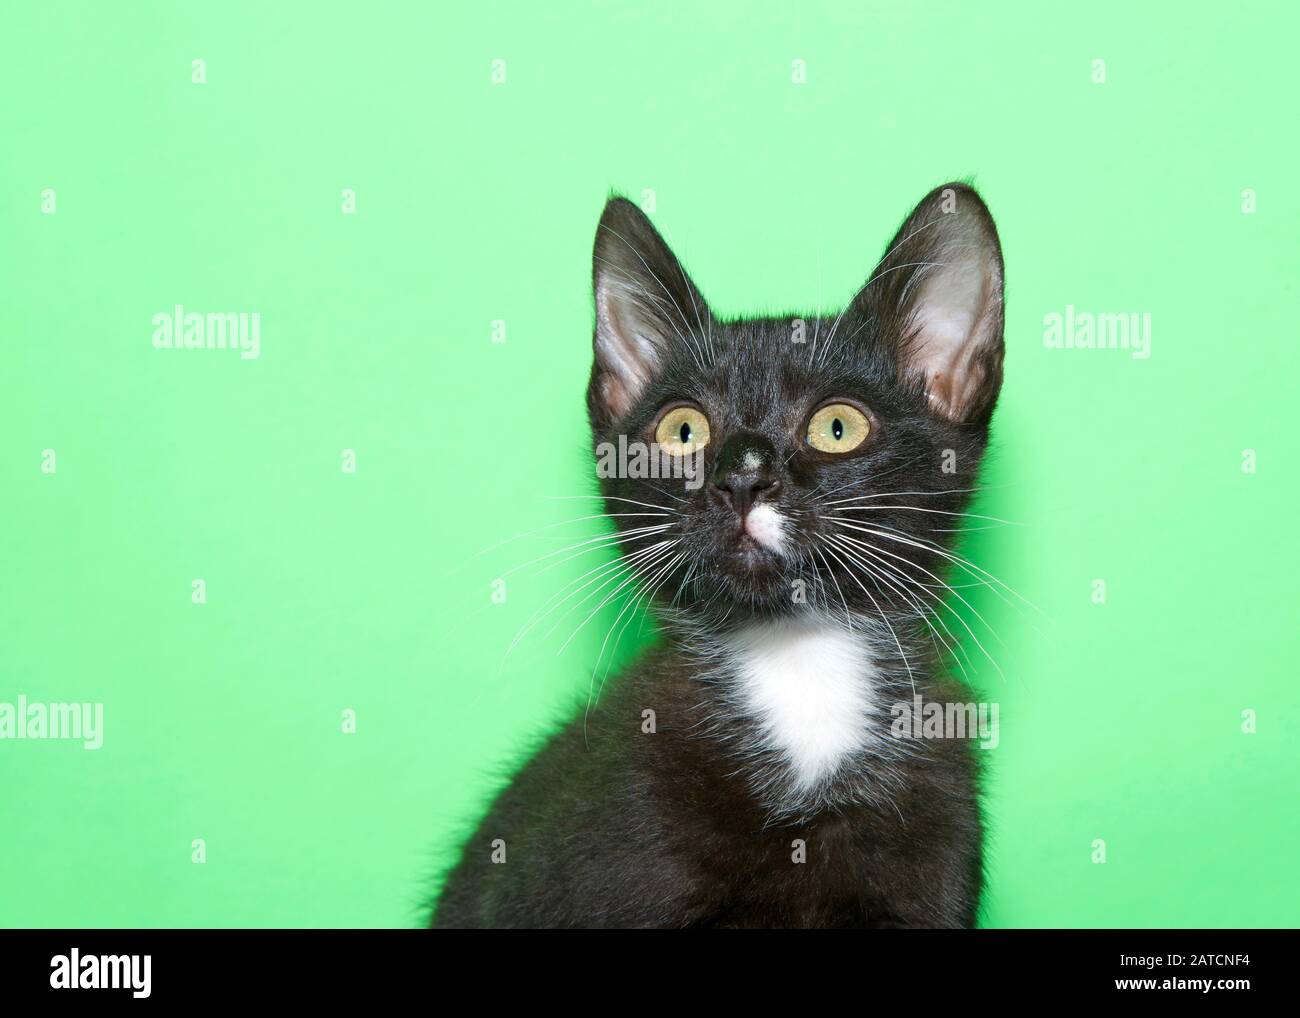 Primer plano retrato de un adorable gatito blanco y negro con ojos verdes mirando hacia arriba y a los espectadores a la izquierda. Fondo verde menta claro con espacio de copia. Foto de stock